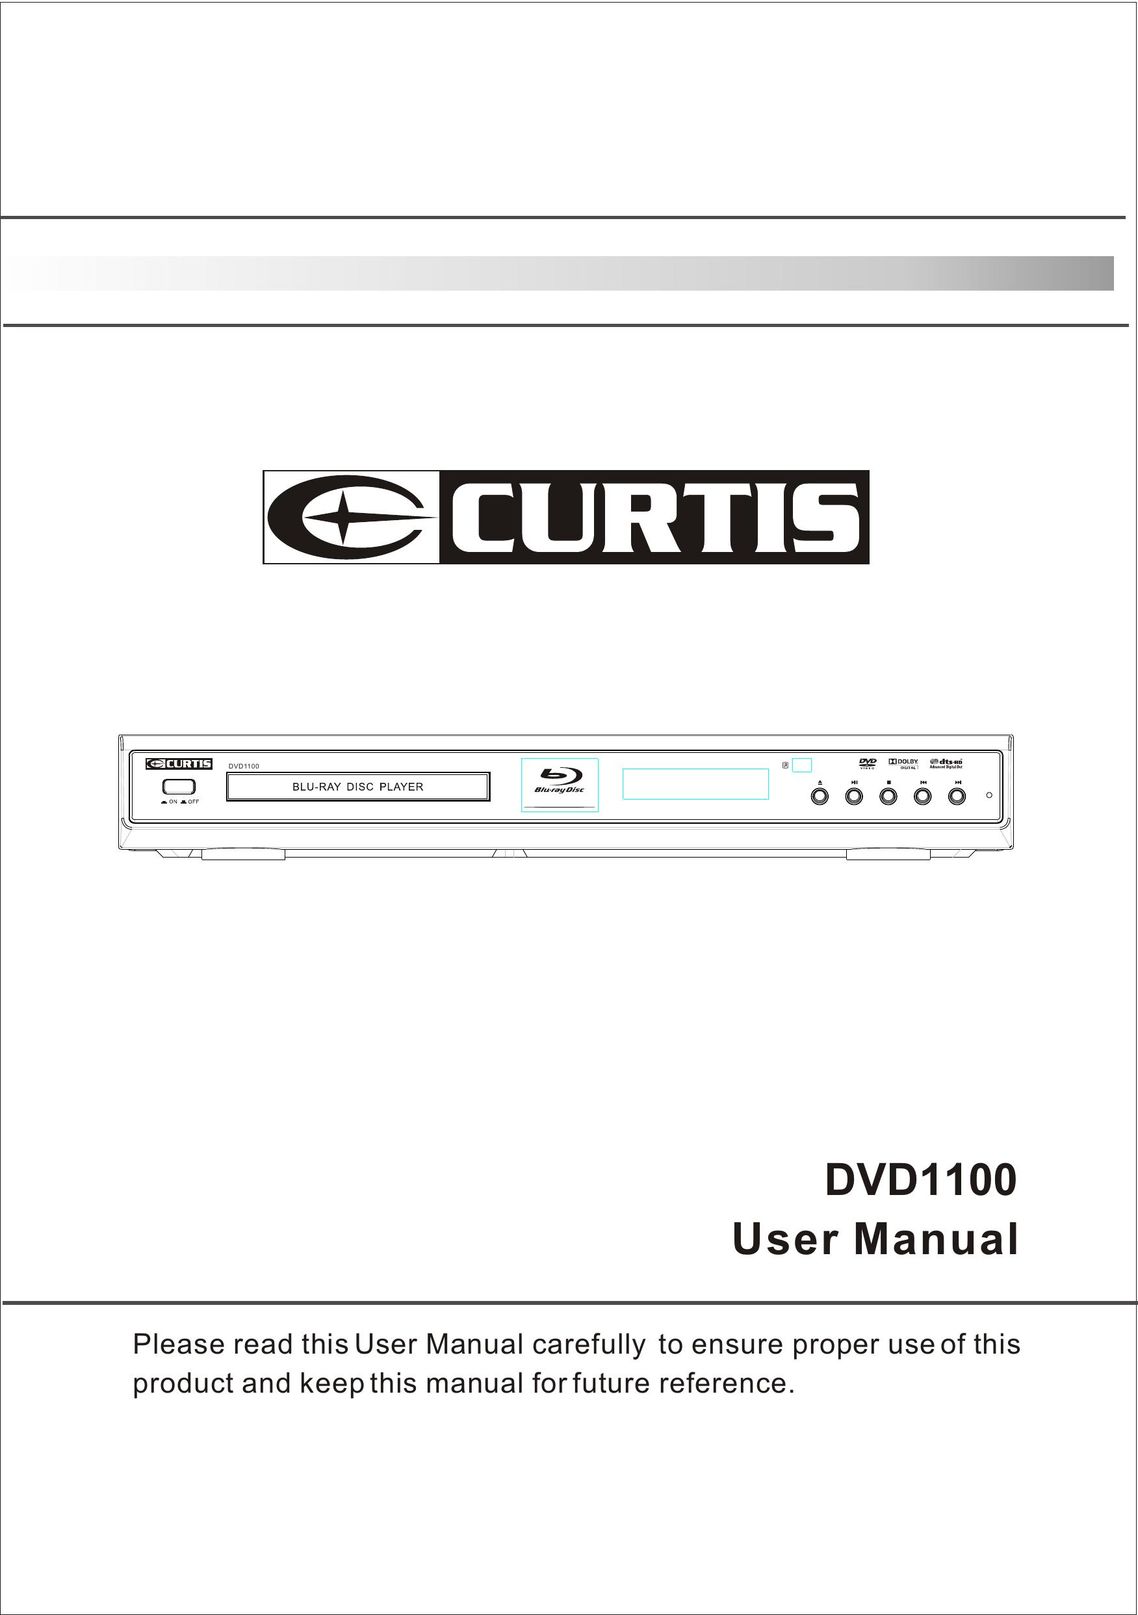 Curtis DVD1100 DVD Player User Manual